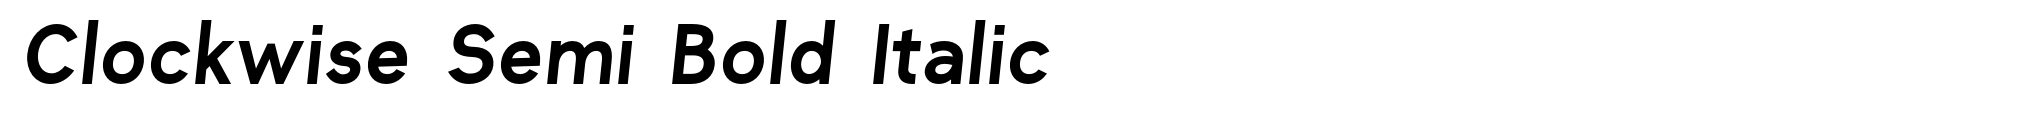 Clockwise Semi Bold Italic image